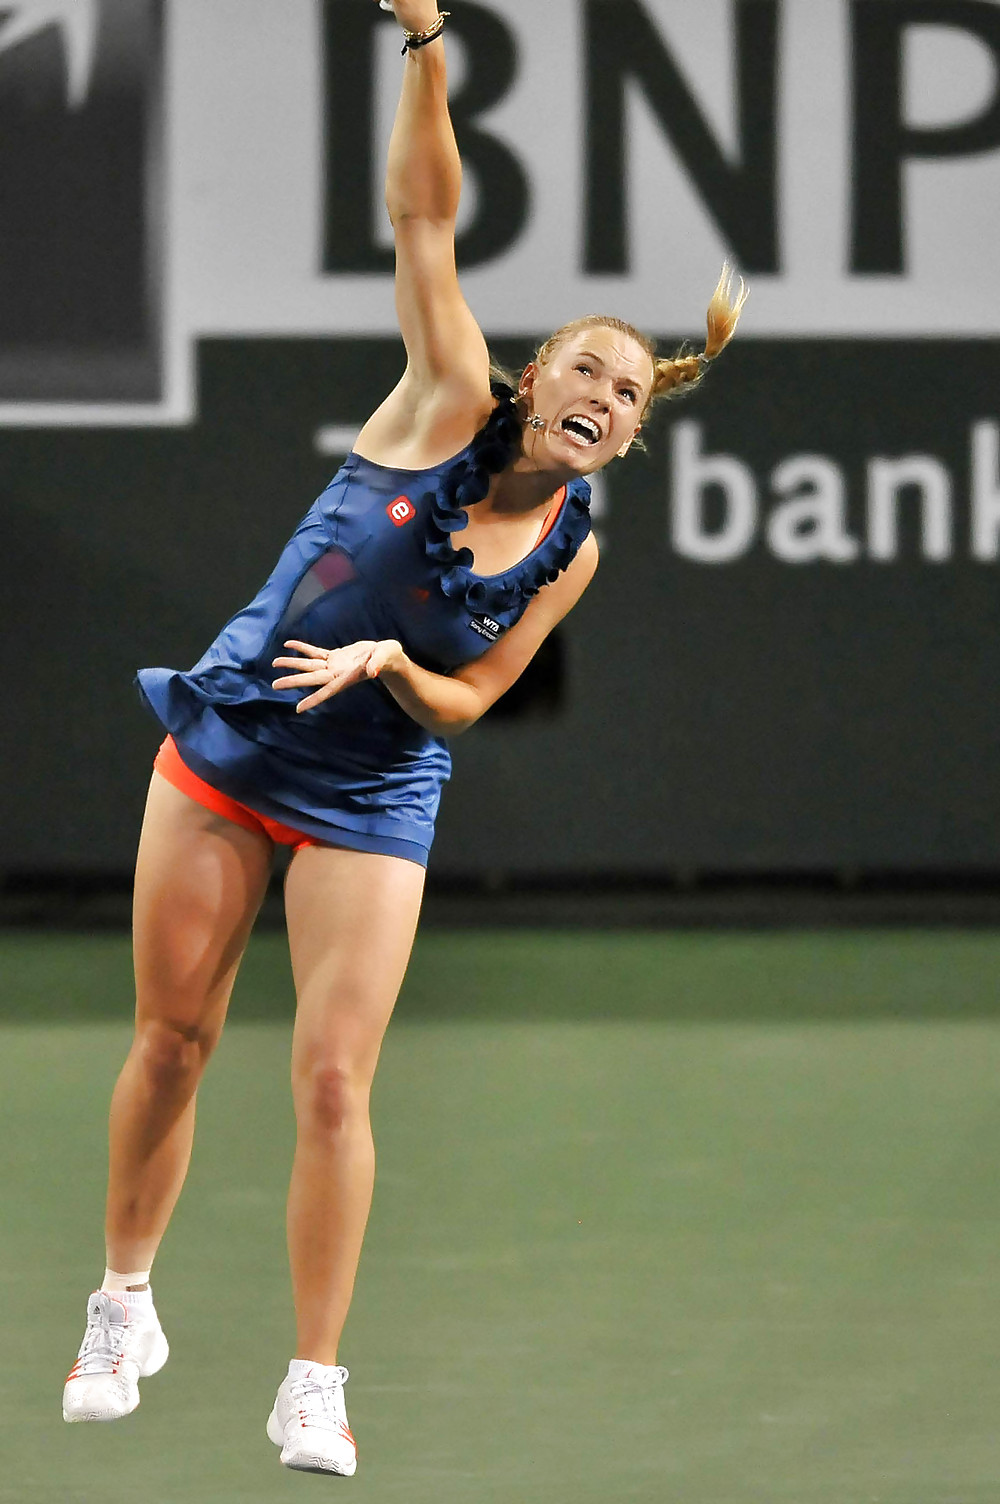 Caro Wozniacki - Joueur De Tennis Le Plus Baisable #26070148